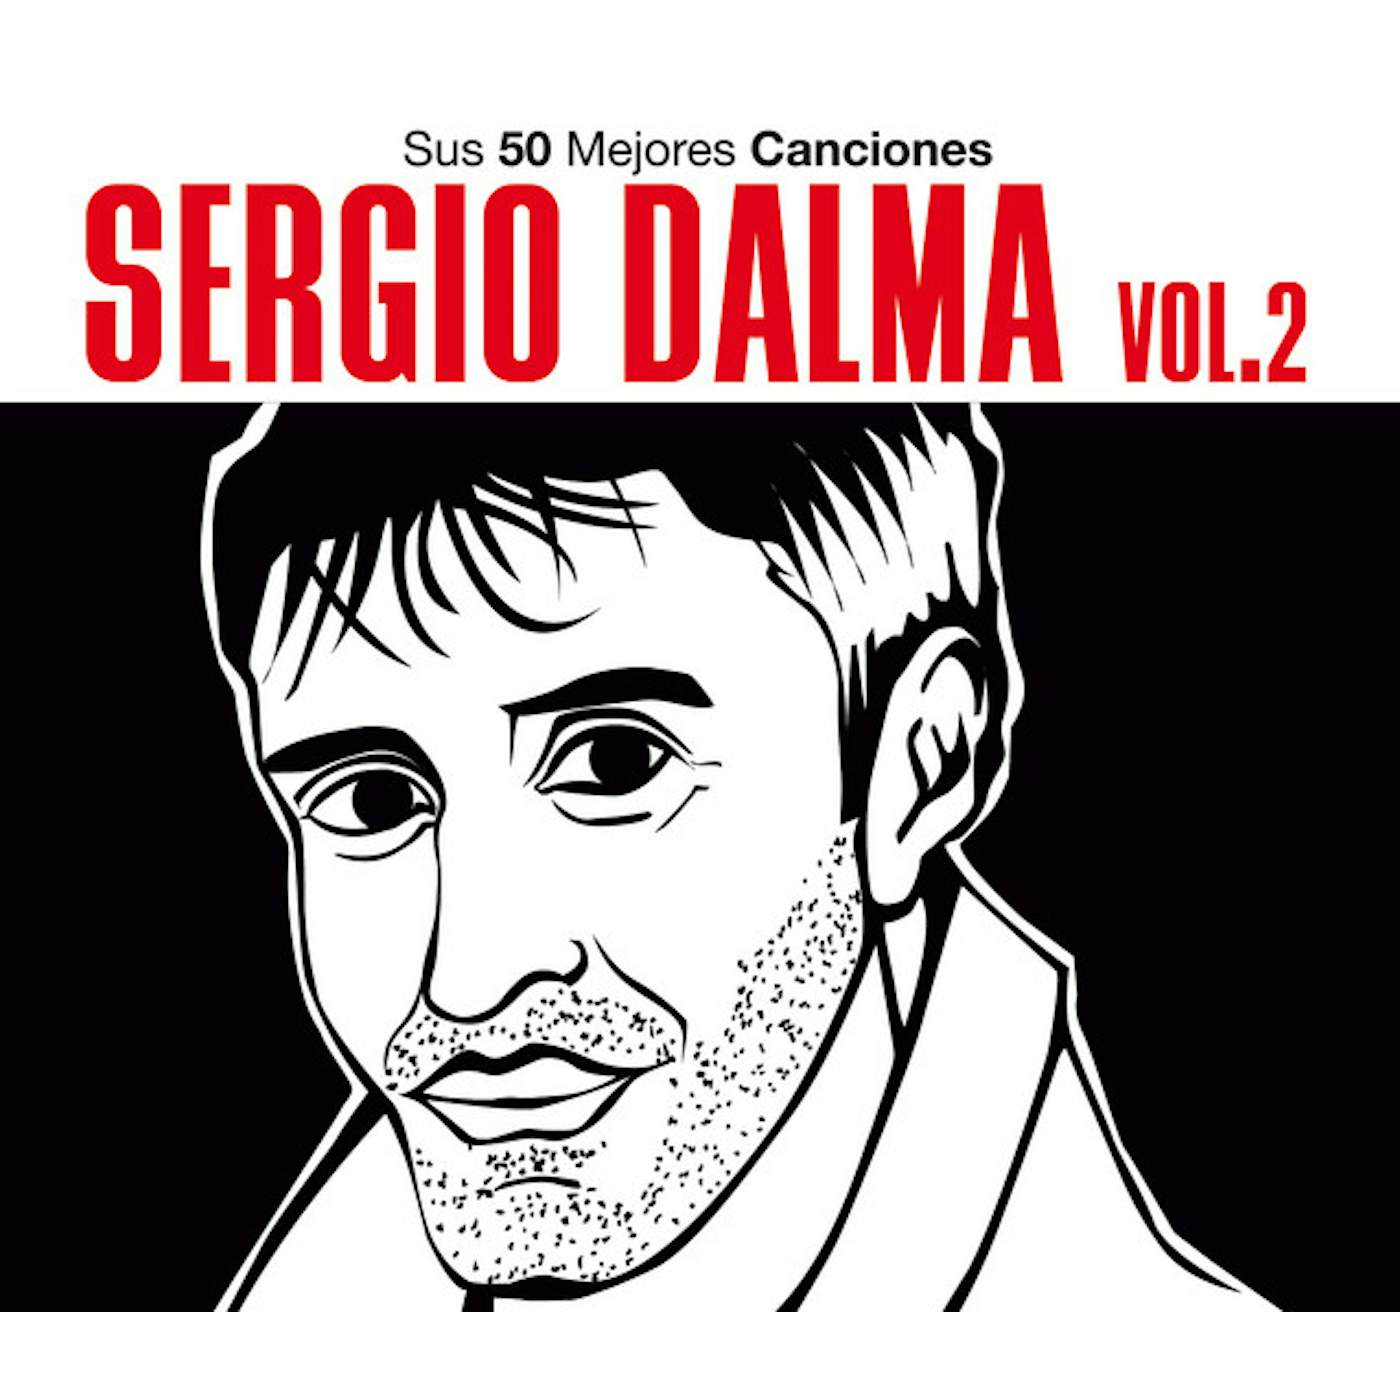 Sergio Dalma SUS 50 MEJORES CANCIONES VOL 2 CD